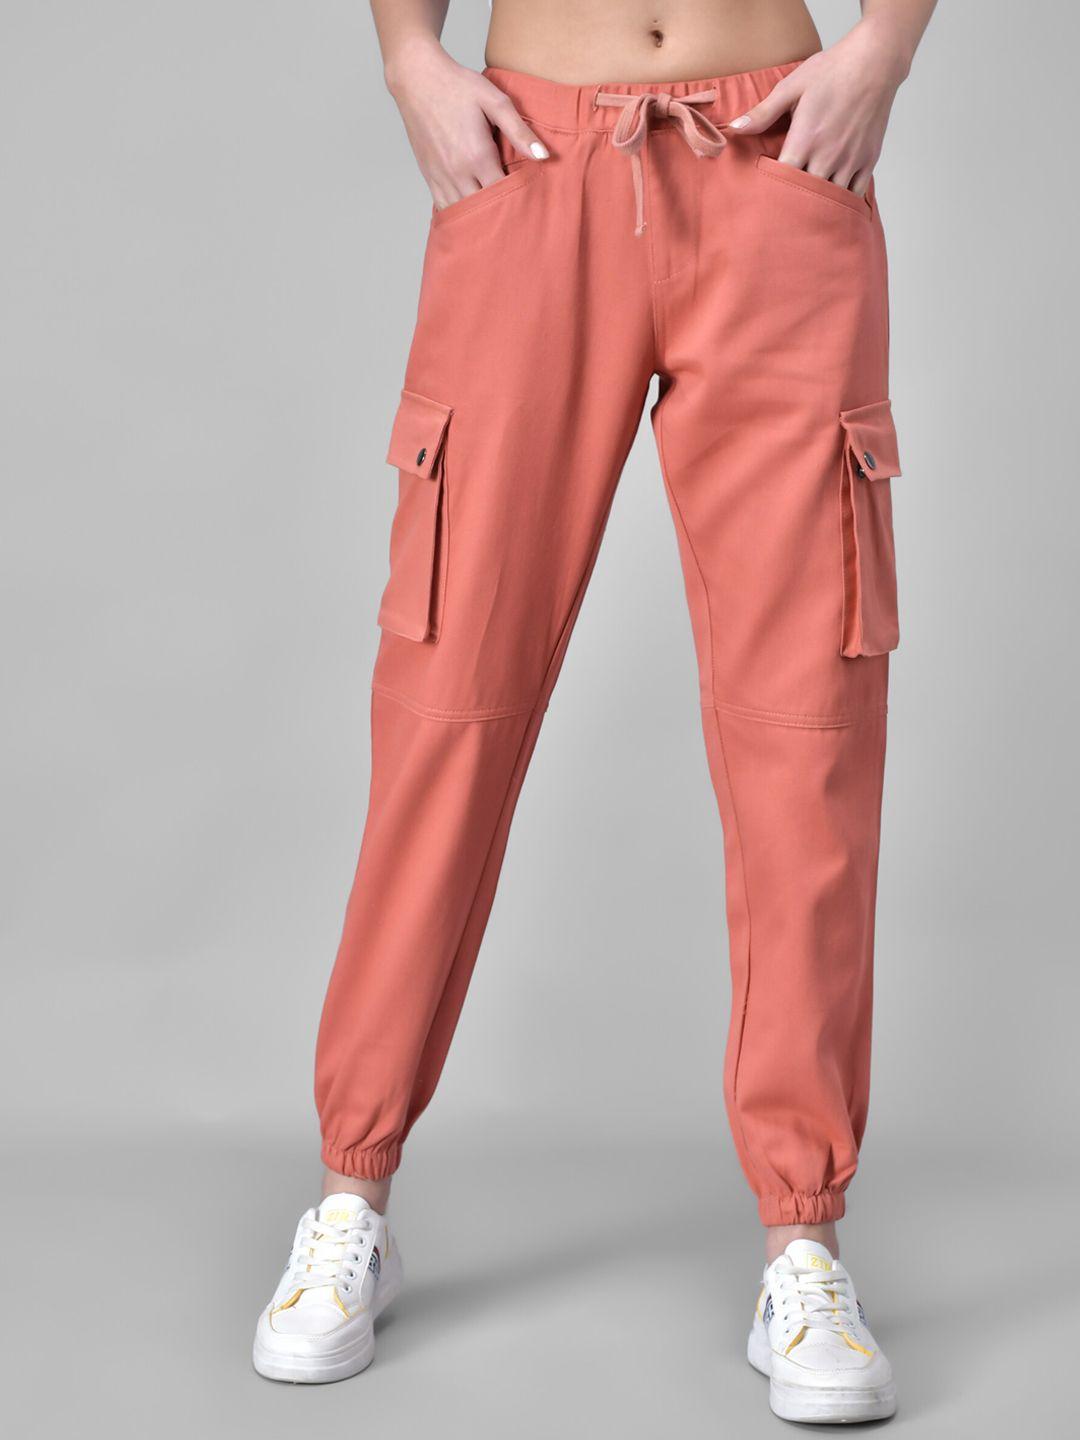 q-rious-women-peach-coloured-joggers-trousers